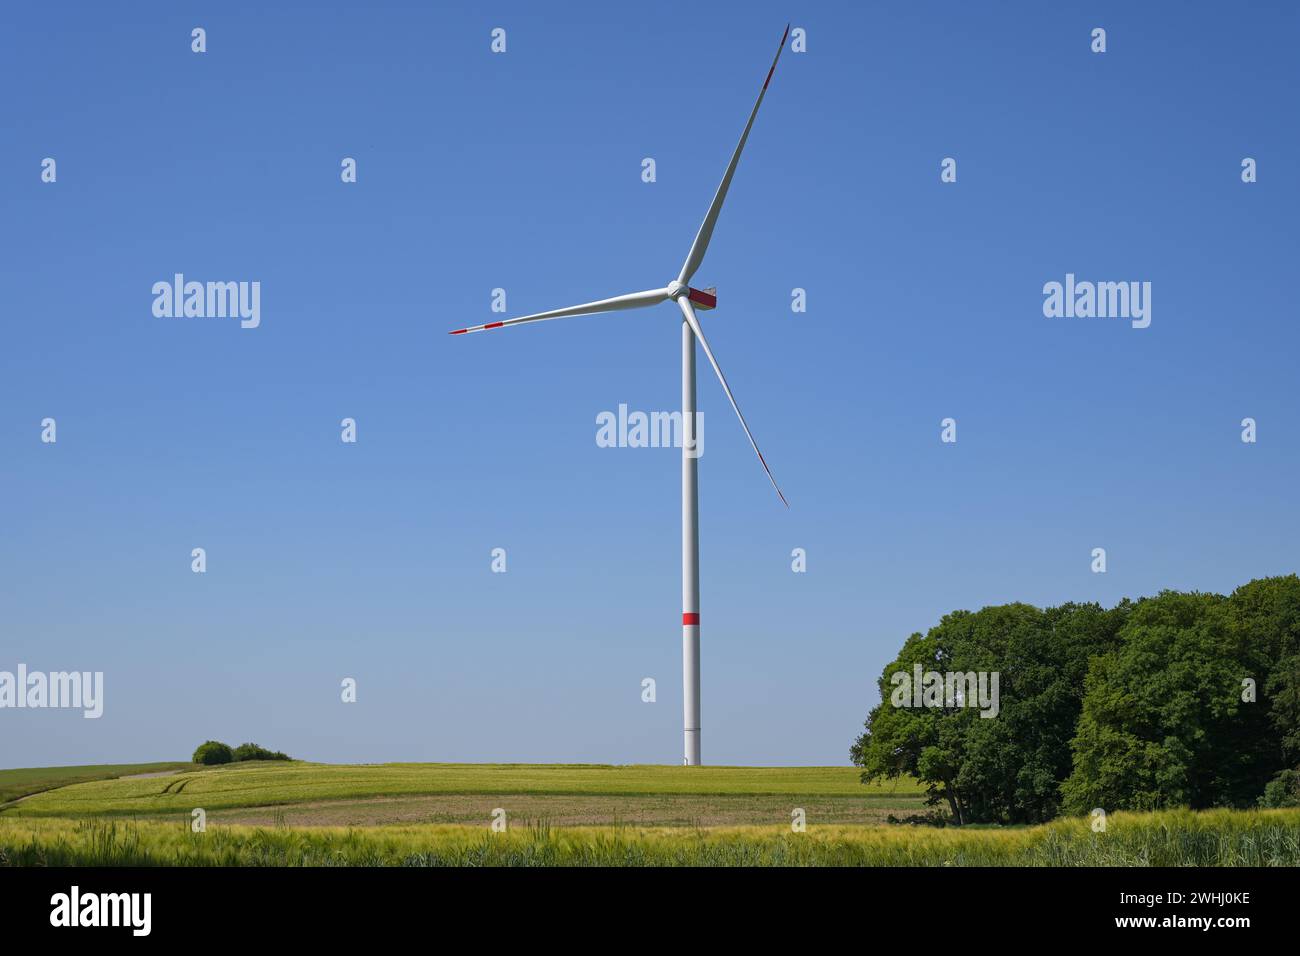 Hohe Windkraftanlage mit schlankem Turm und drei Rotorblättern, die auf einem Feld in einer ländlichen Landschaft vor dem blauen Himmel stehen Stockfoto